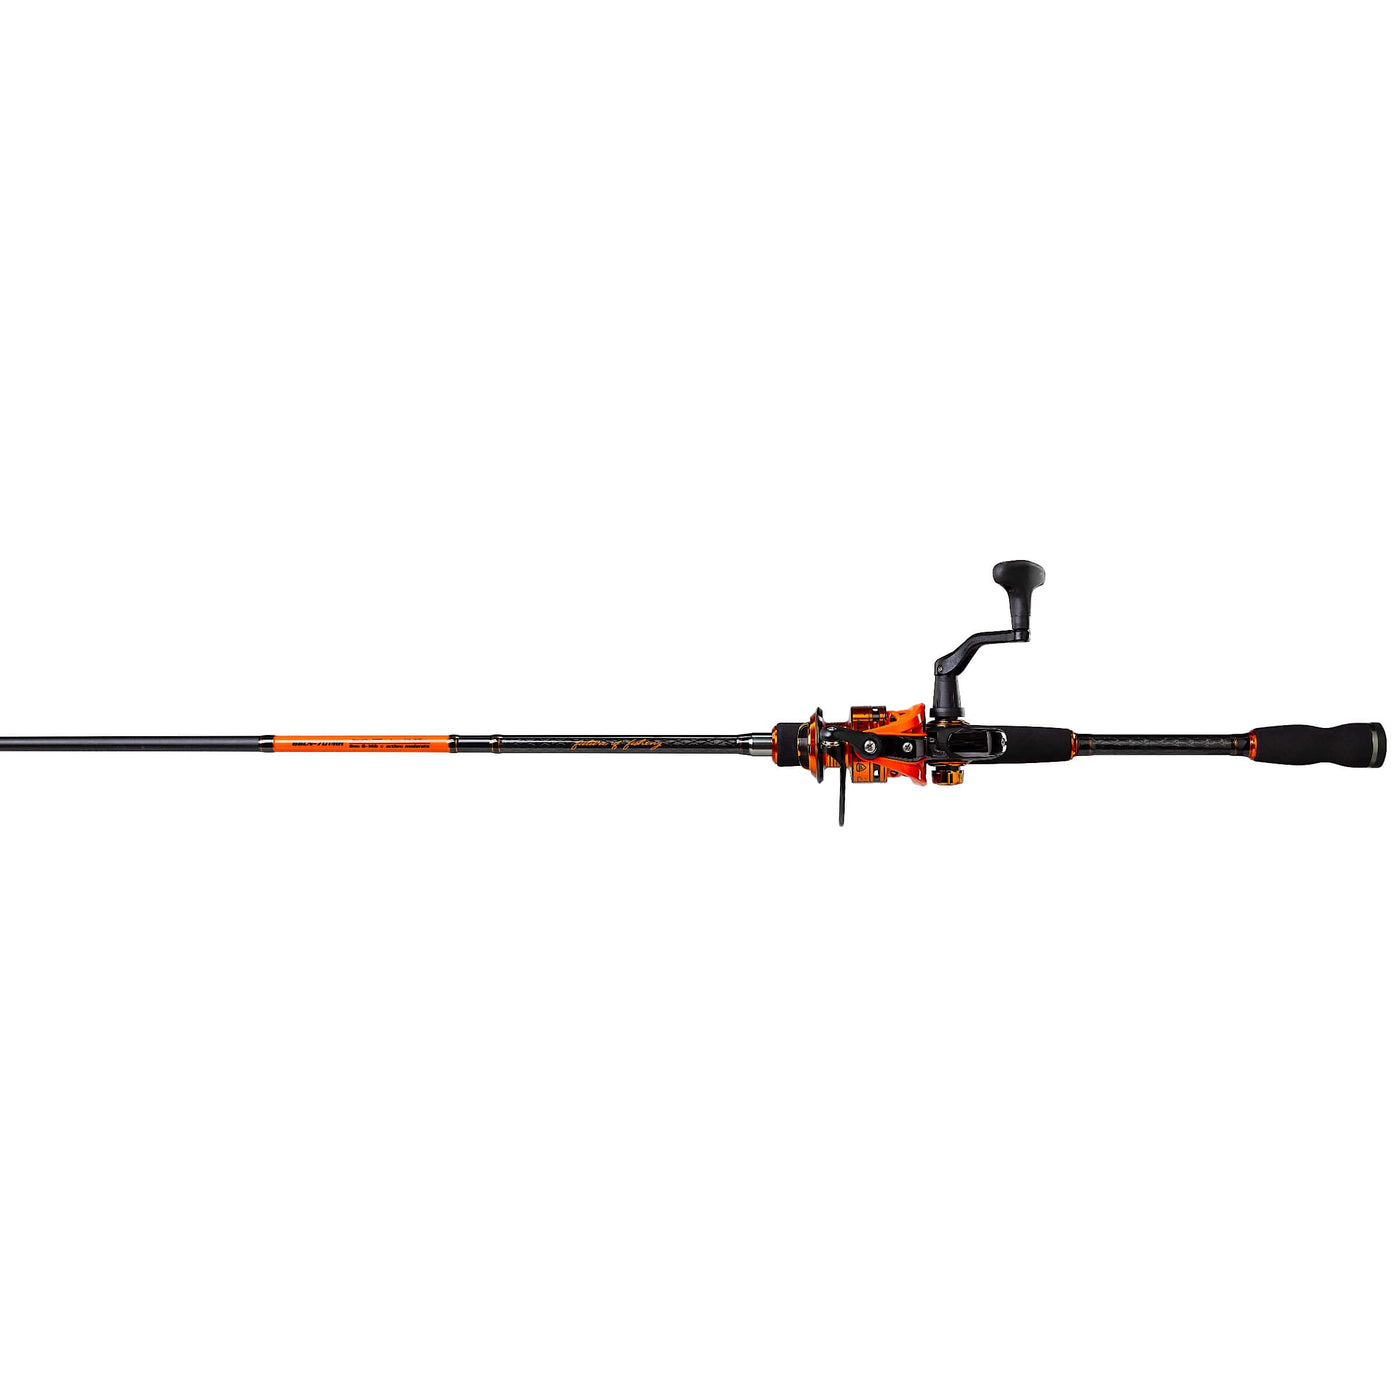 Opolski Premium Spinning Reel Balance Bar Precise for Fishing Ultralight 